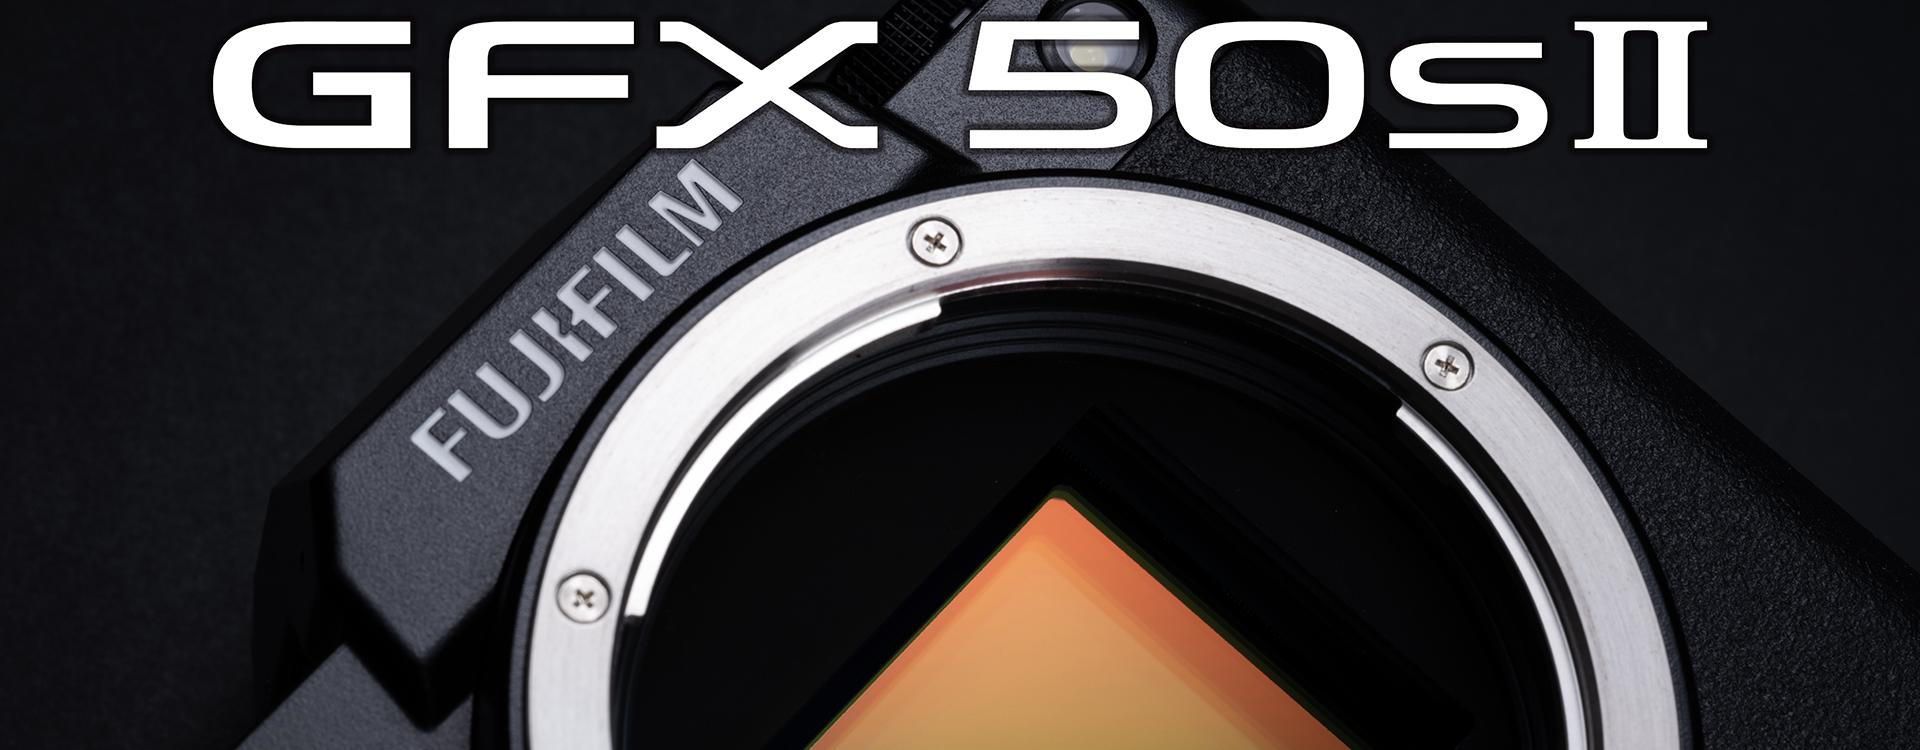 Fujifilm GFX 50S II con estabilizador de imagen, pantalla táctil y nuevo procesador